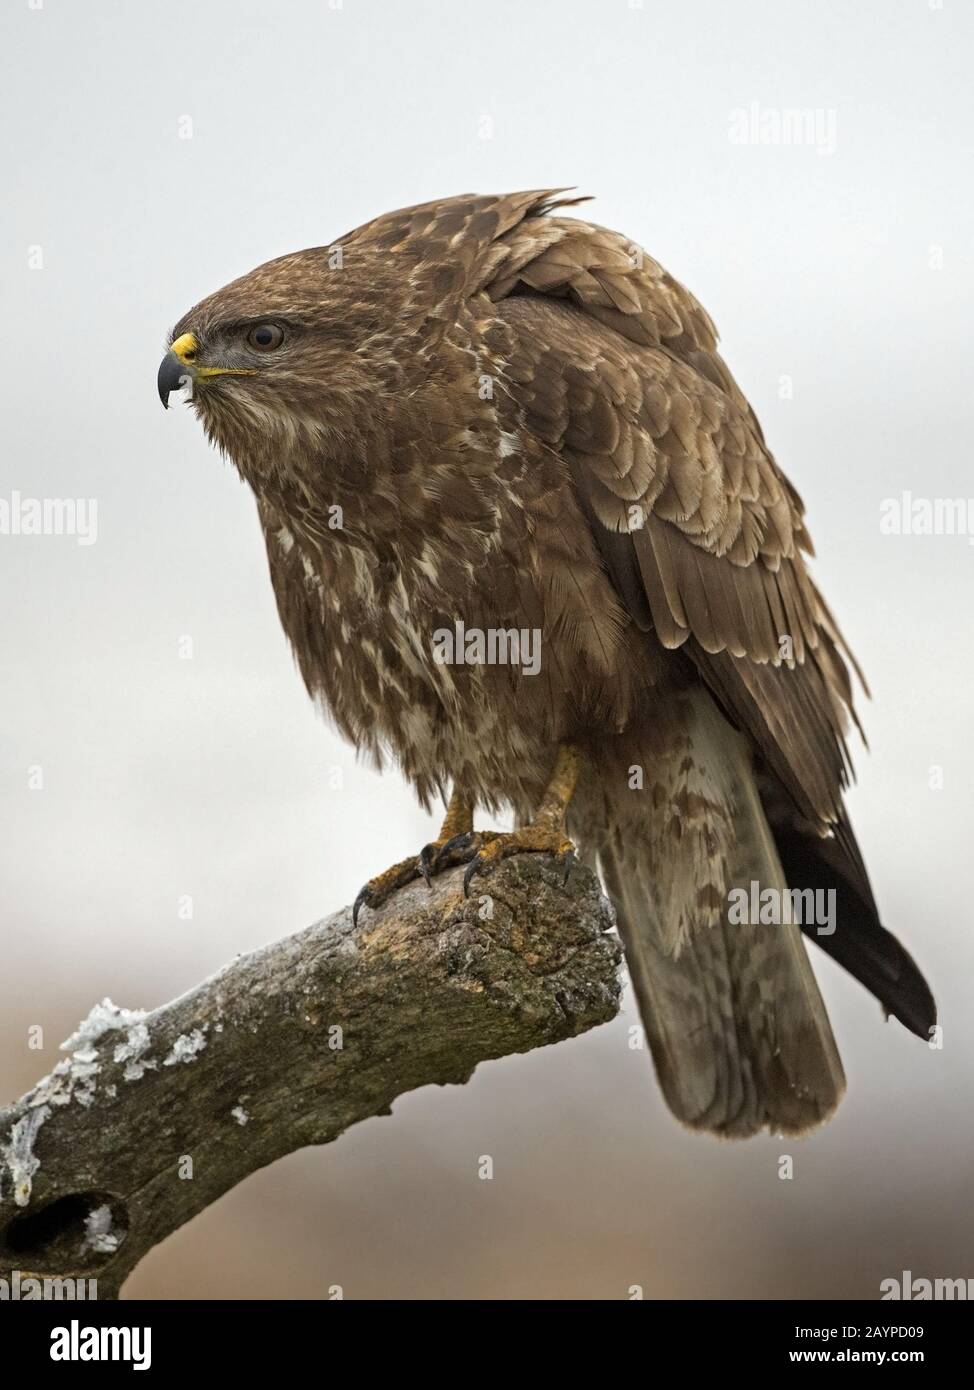 Common buzzard perched Stock Photo